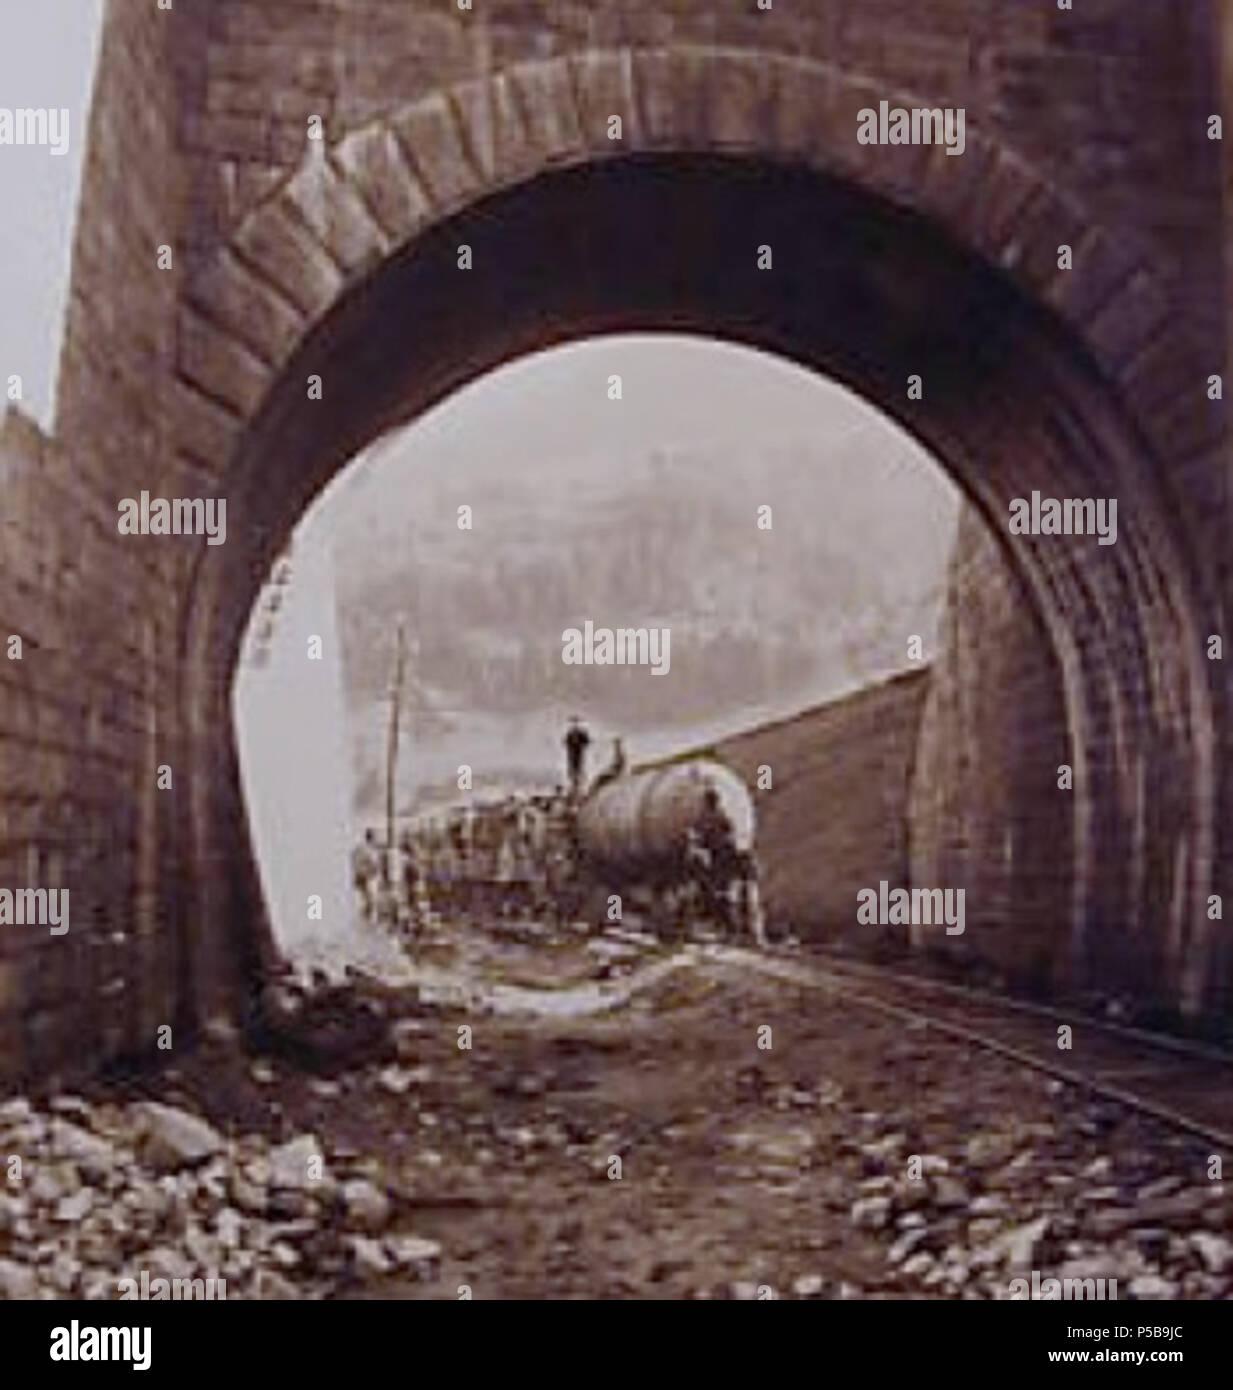 N/A. Anglais : l'image montre une locomotive pneumatique utilisé lors de la construction de tunnel ferroviaire du Saint-Gothard derrière une arche ou tunnel court de seulement quelques mètres. La légende originale de l'image se traduit par 'Entrée du Tunnel à Airolo", ce qui indique probablement l'emplacement approximatif de l'écran montré, ce qui n'est pas le sud du portail du tunnel ferroviaire du Saint-Gothard lui-même. La locomotive pneumatique montre l'énergie stockée sous la forme d'air comprimé dans le grand récipient sous pression à l'avant. L'expansion de parution a été utilisé de l'air pour faire fonctionner le moteur de la locomotive. Compresseurs de vapeur w Banque D'Images